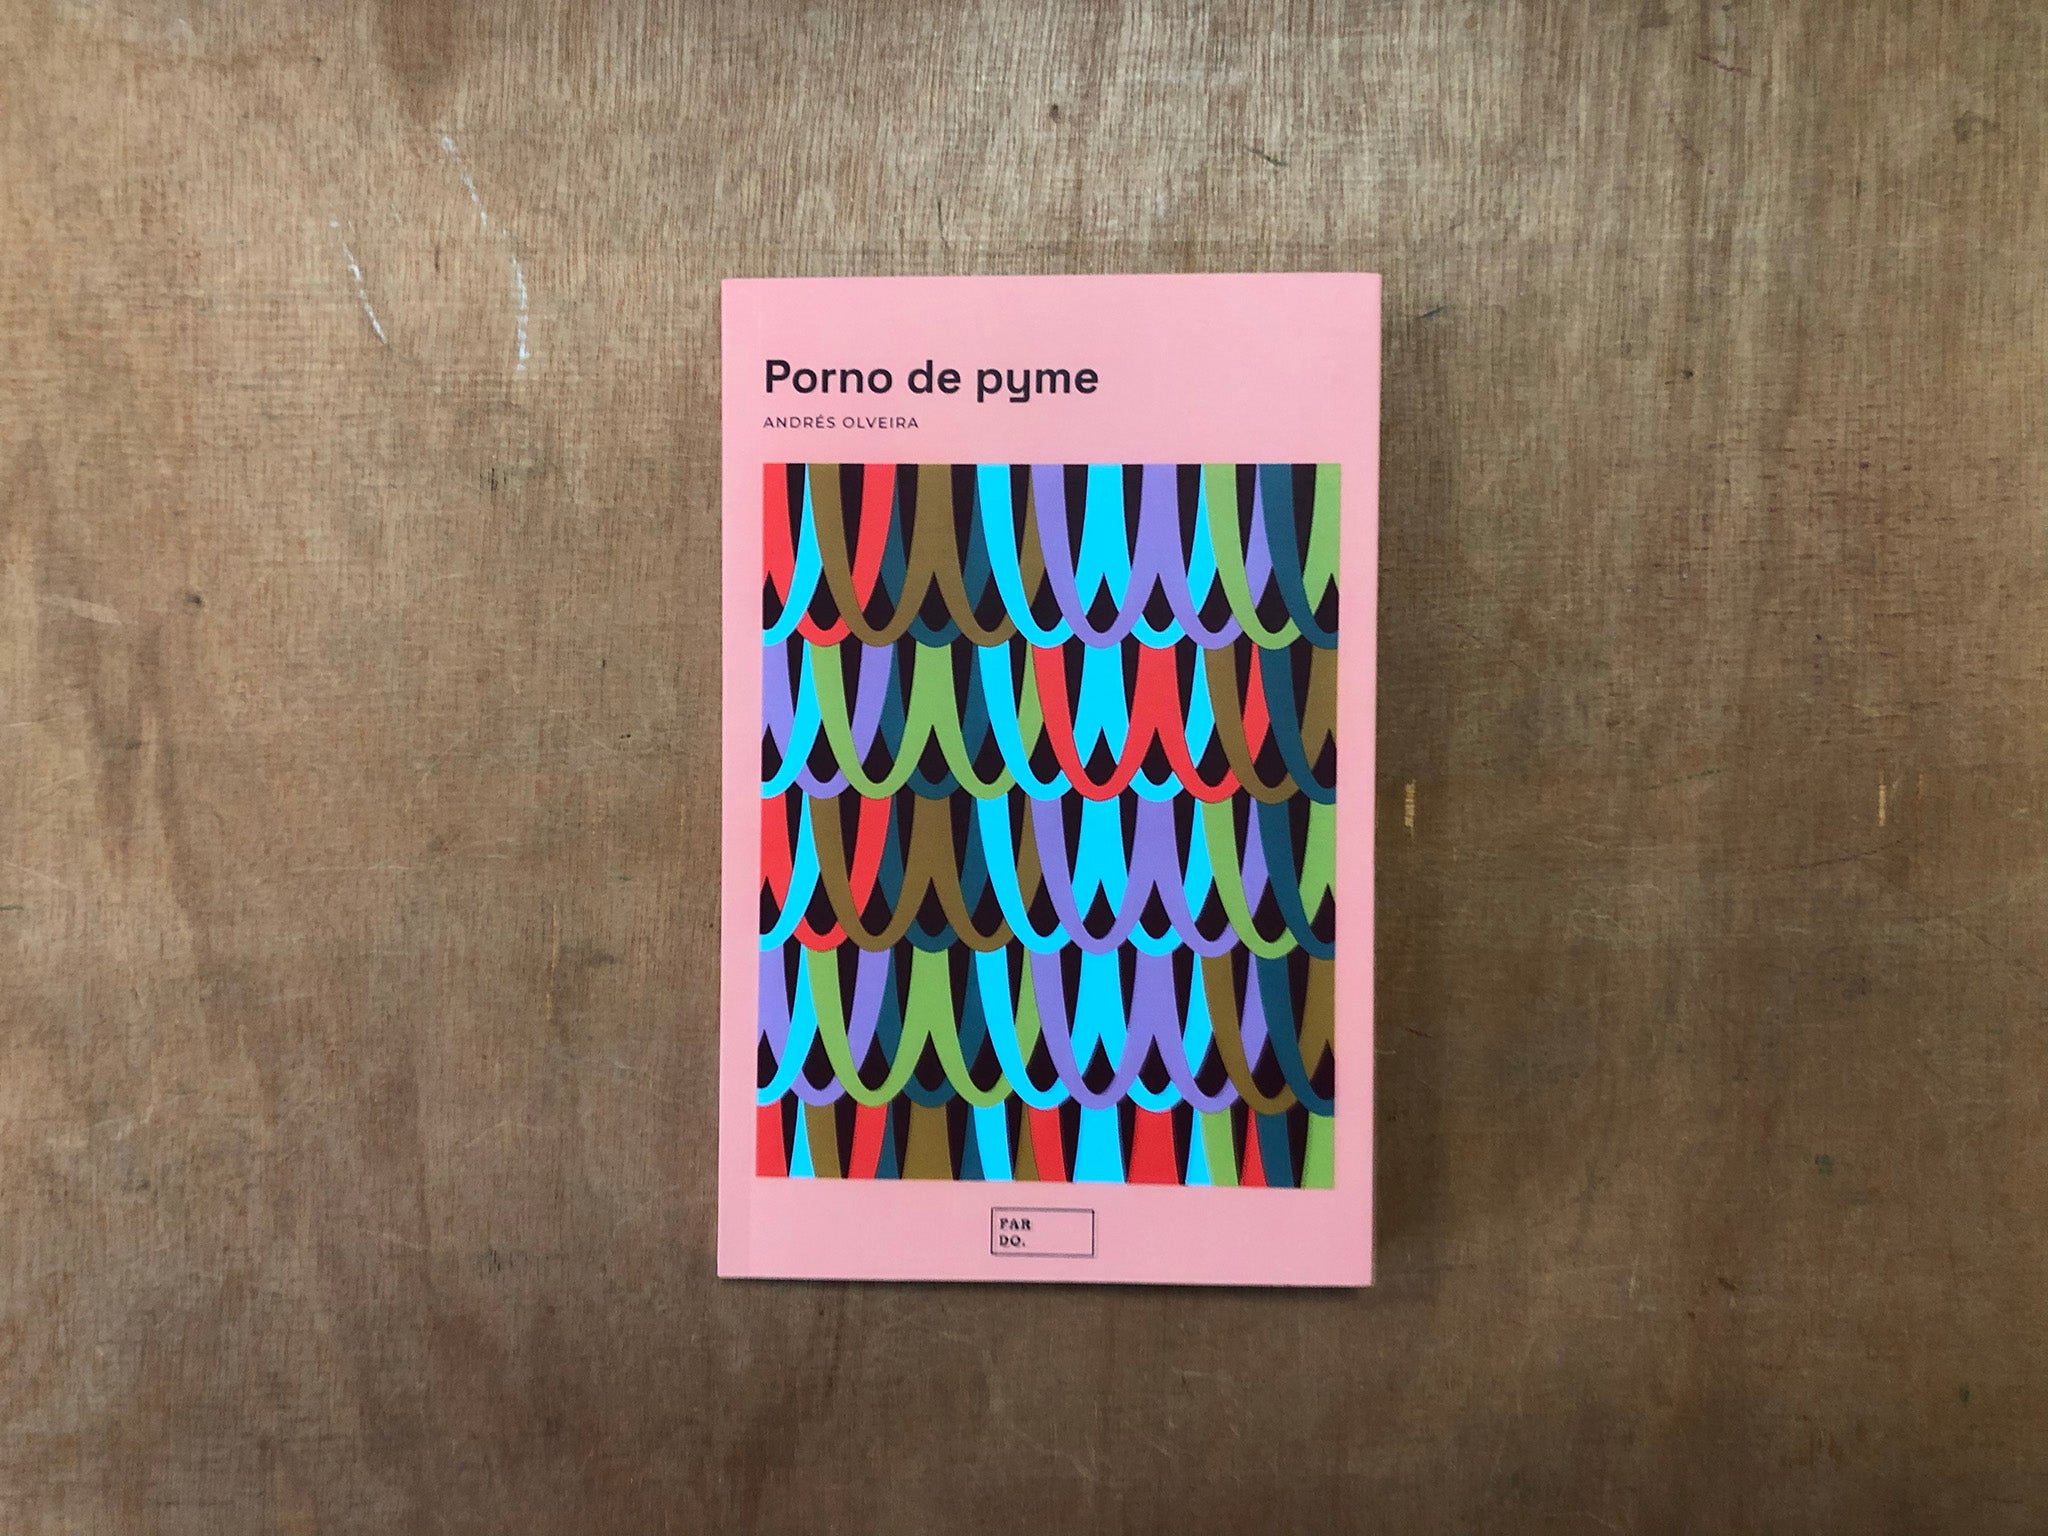 PORNO DE PYME (SME PORN) by Andres Olveira